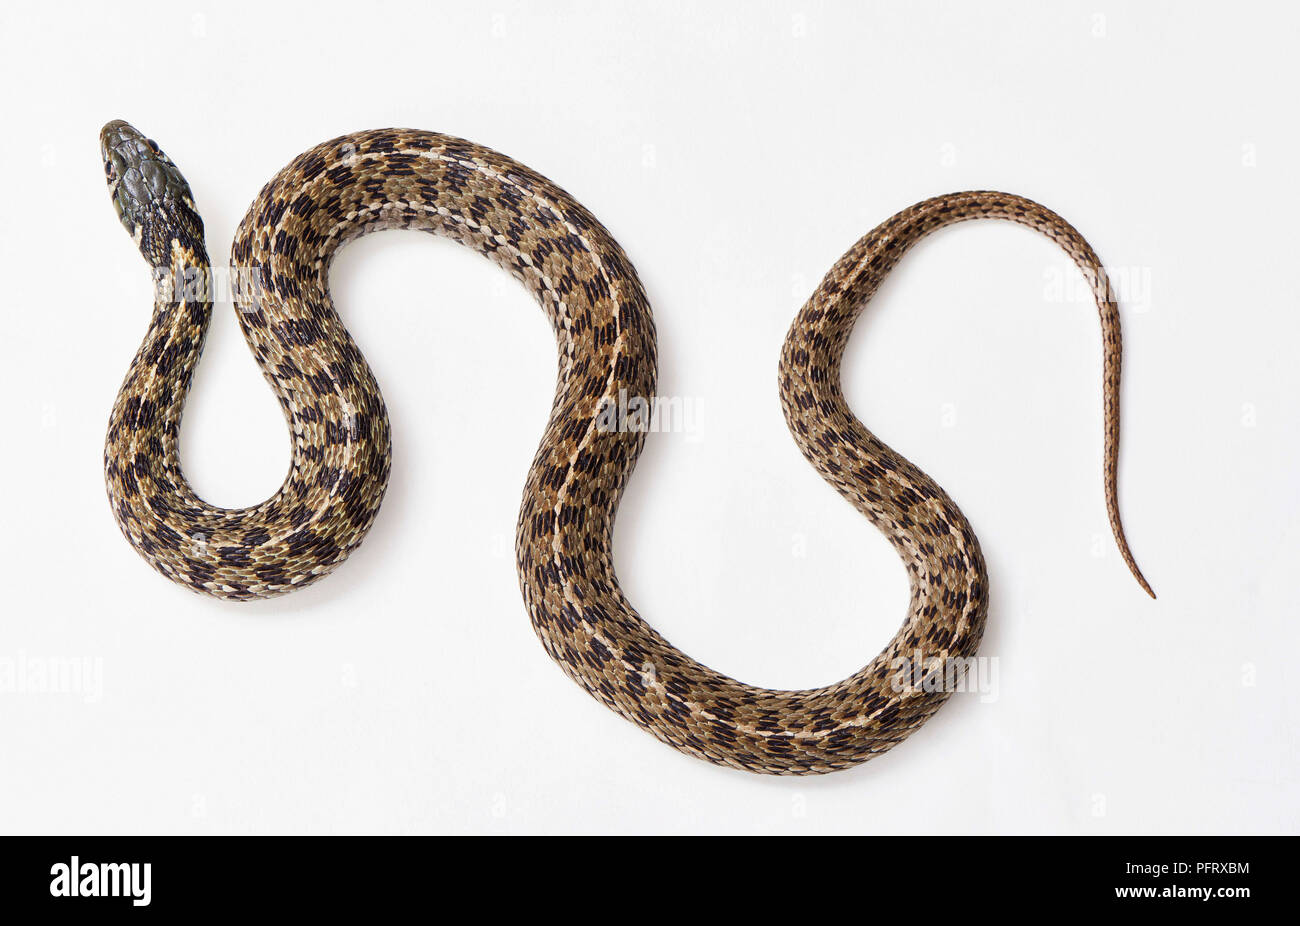 Chequered garter snake, Thamnophis marcianus. Stock Photo